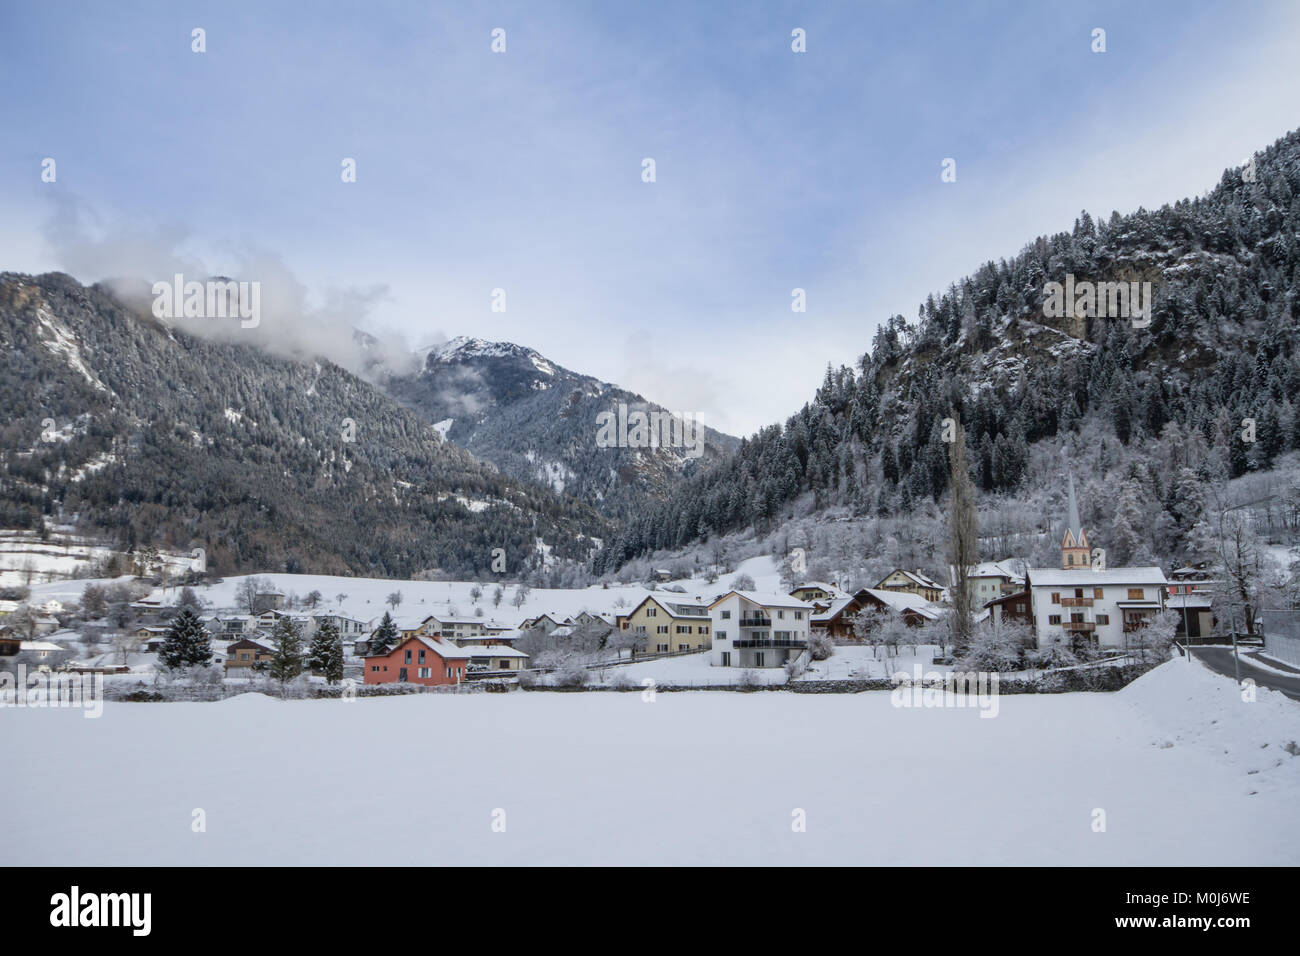 Village Sils im Domleschg, Canton des Grisons (Graubünden), Suisse Banque D'Images